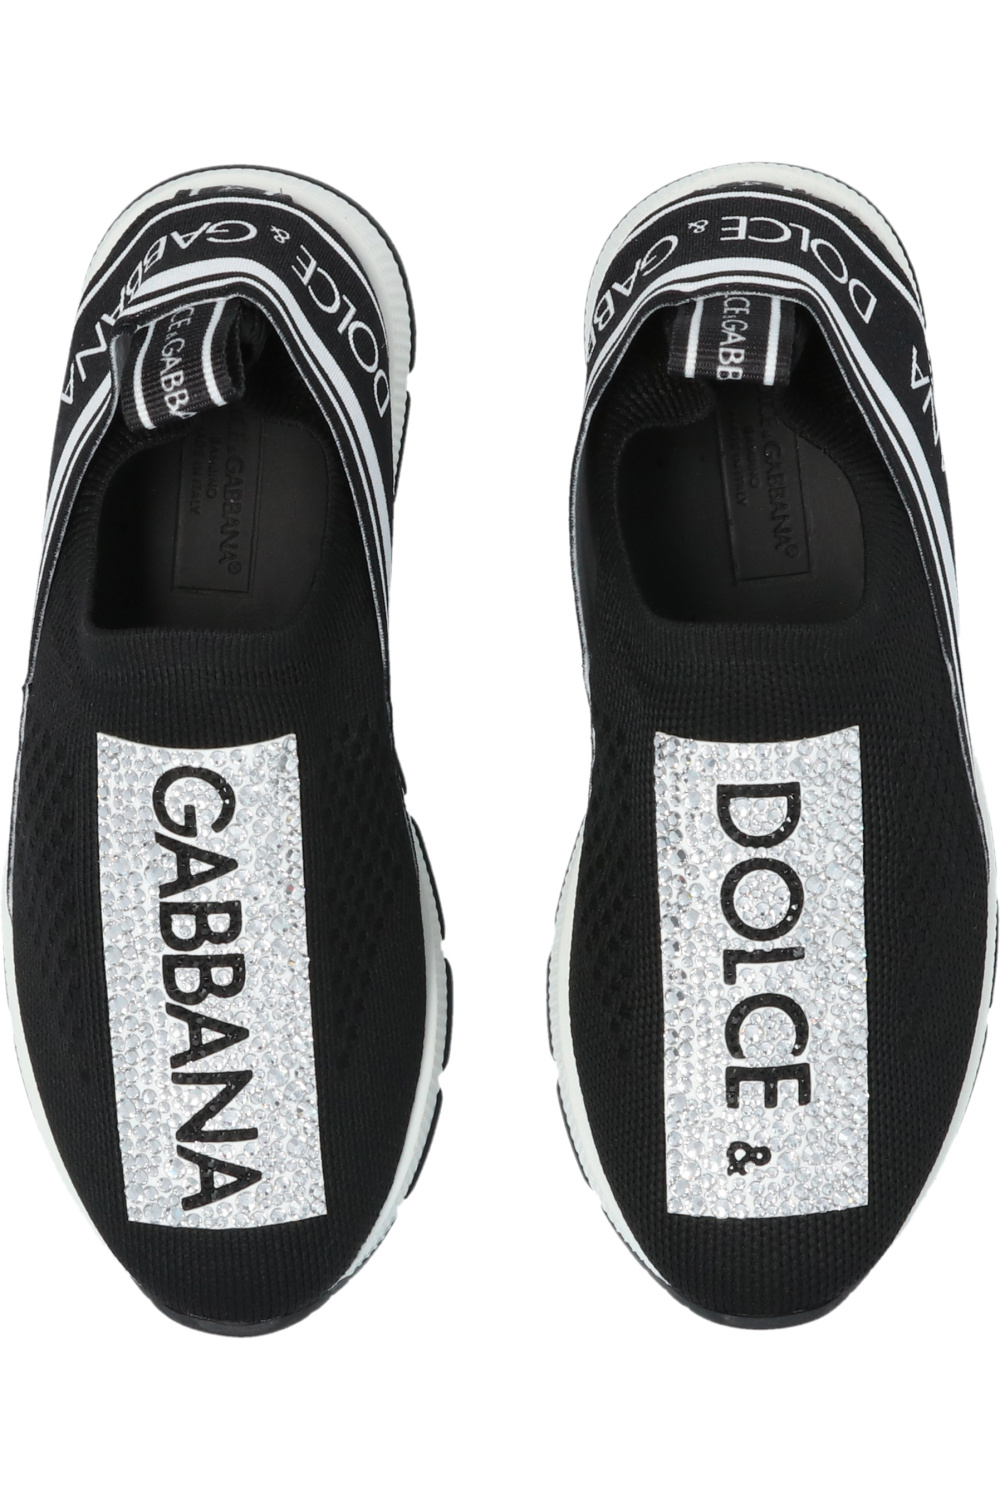 Dolce & Gabbana Kids Dolce&gabbana Dg4411 Sole from